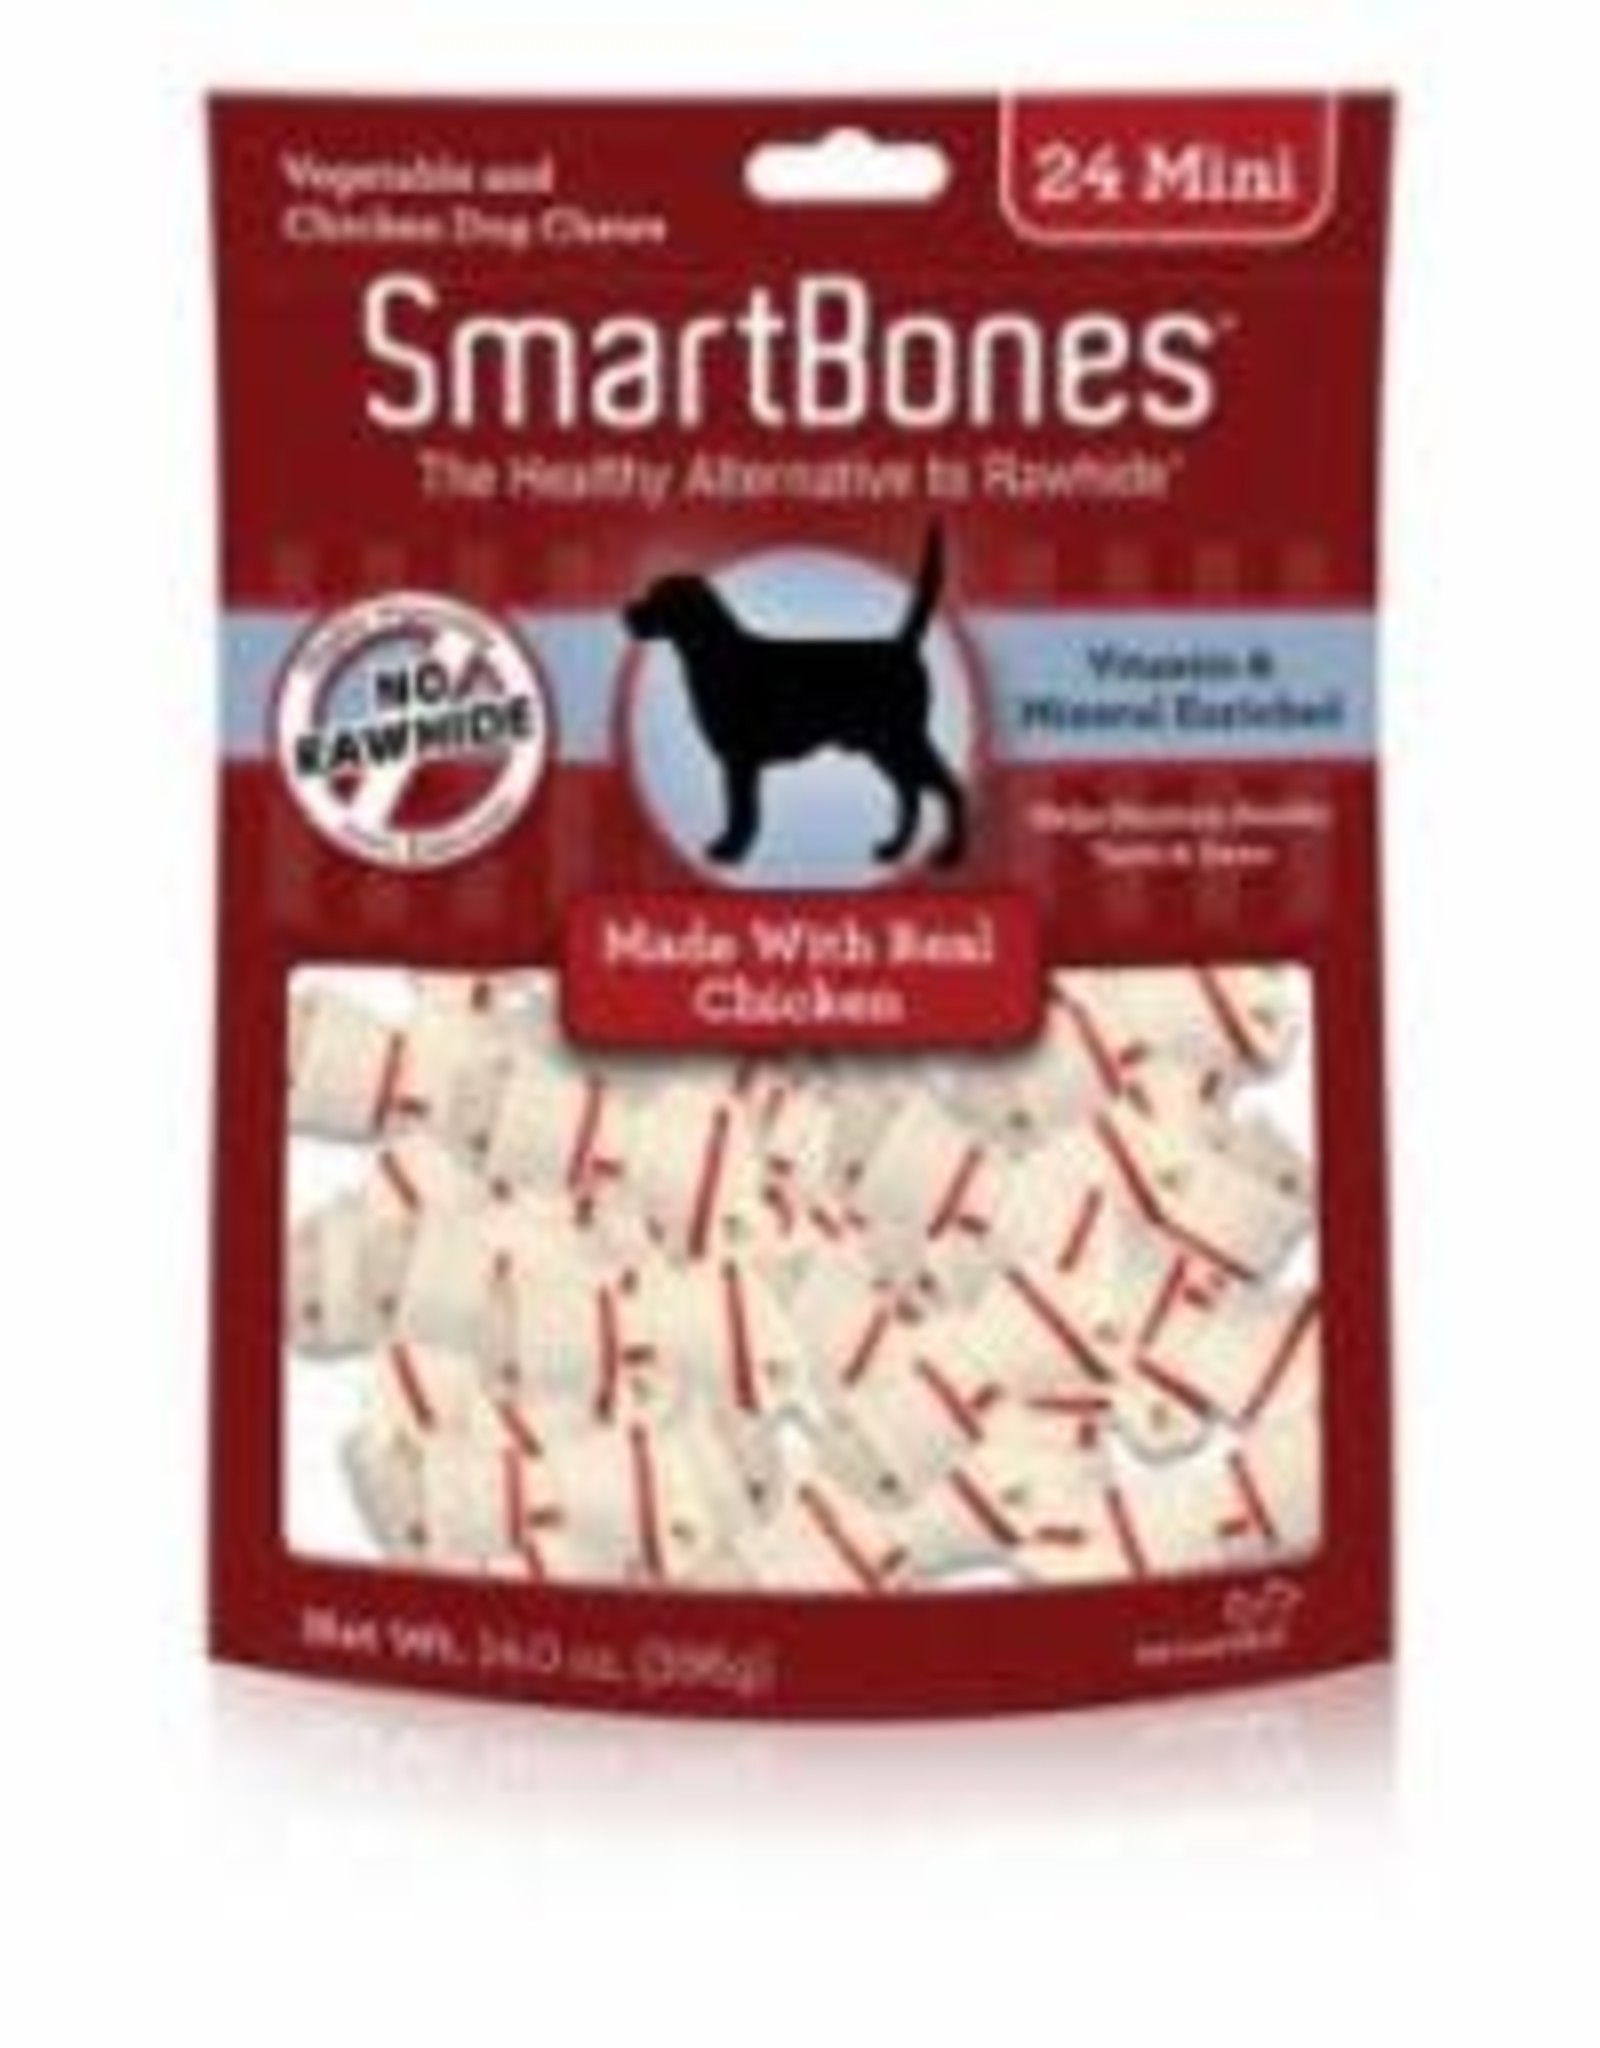 Smart Bones SMARTBONES CHICKEN MINI 24 PACK